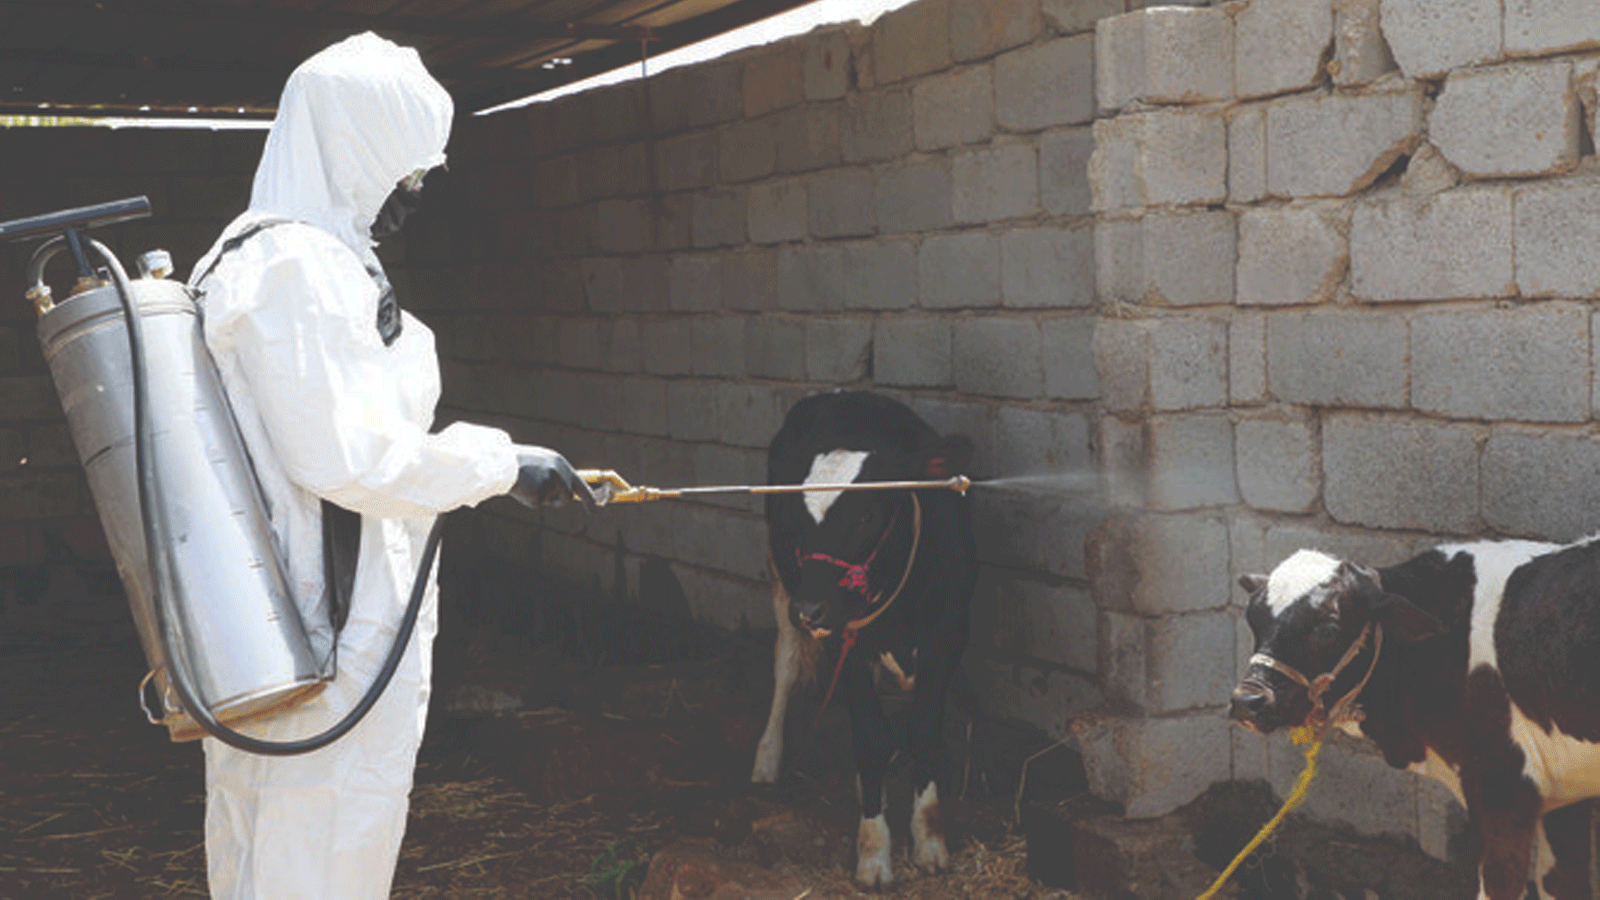 عامل صحي يعقم عجولاً داخل مزرعة في البجاري بالعراق